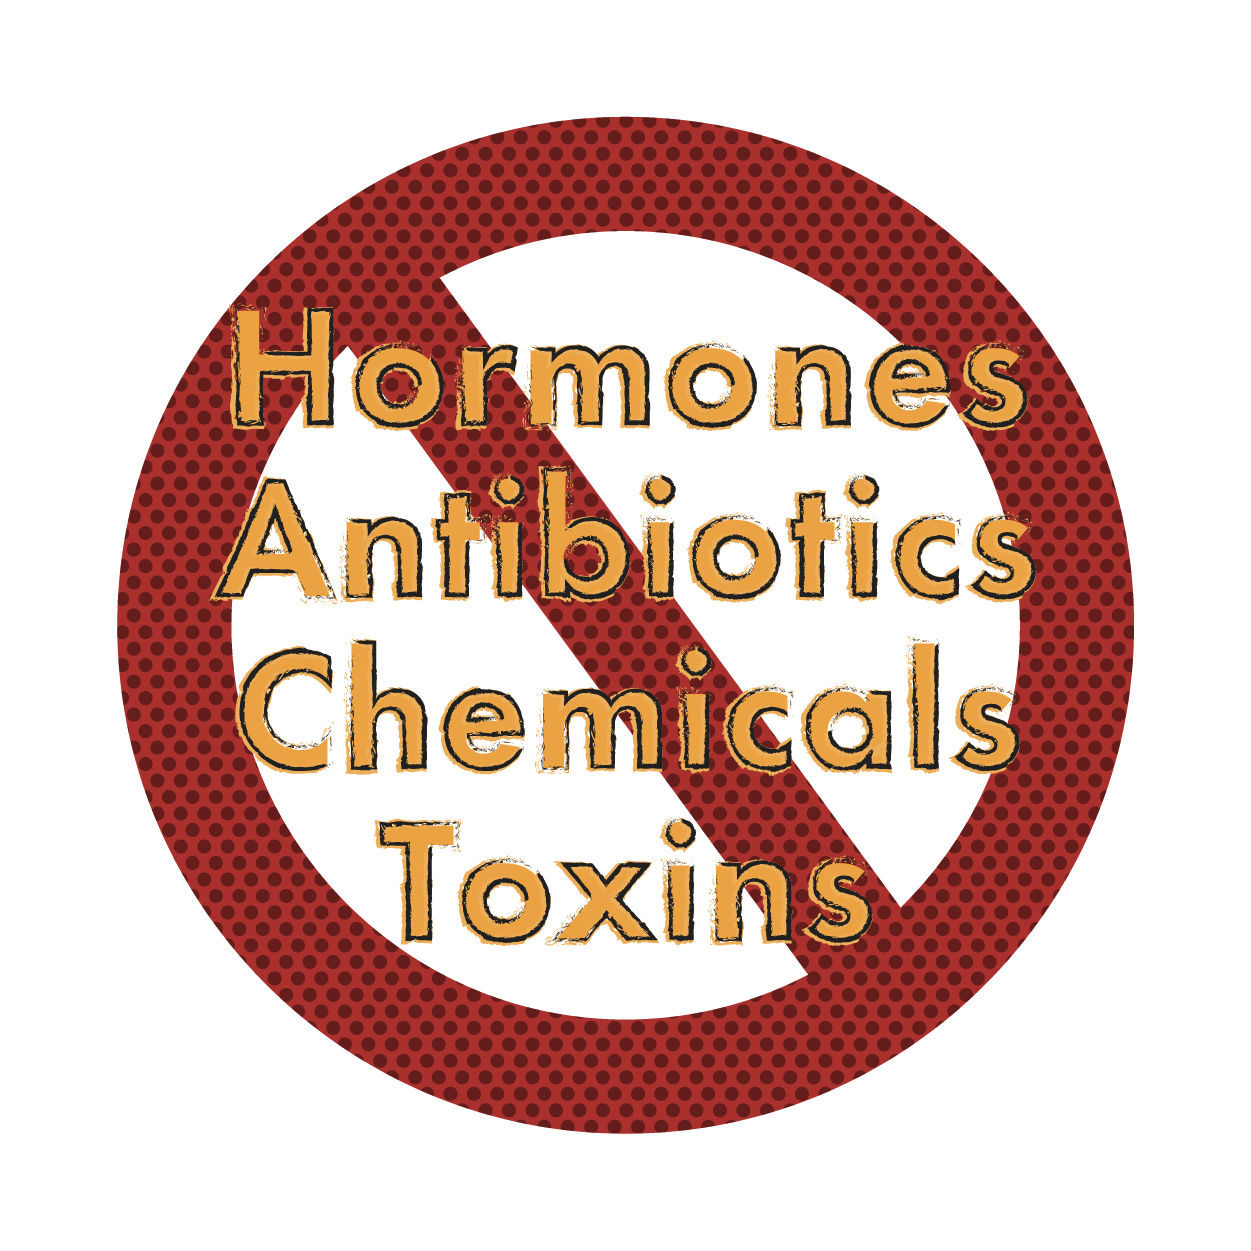 medicus icons _clean, quality food (sans hormones, antibiotics, chemicals, toxins)-